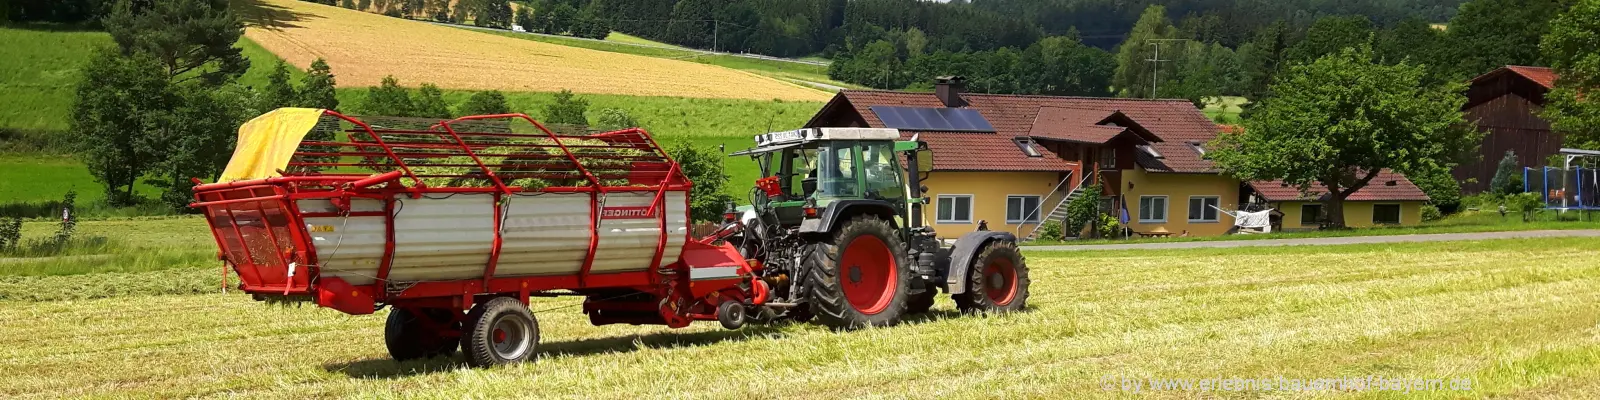 Oberpfalz Bauernhofurlaub Bayerischer Wald Ferienhaus Traktor fahren